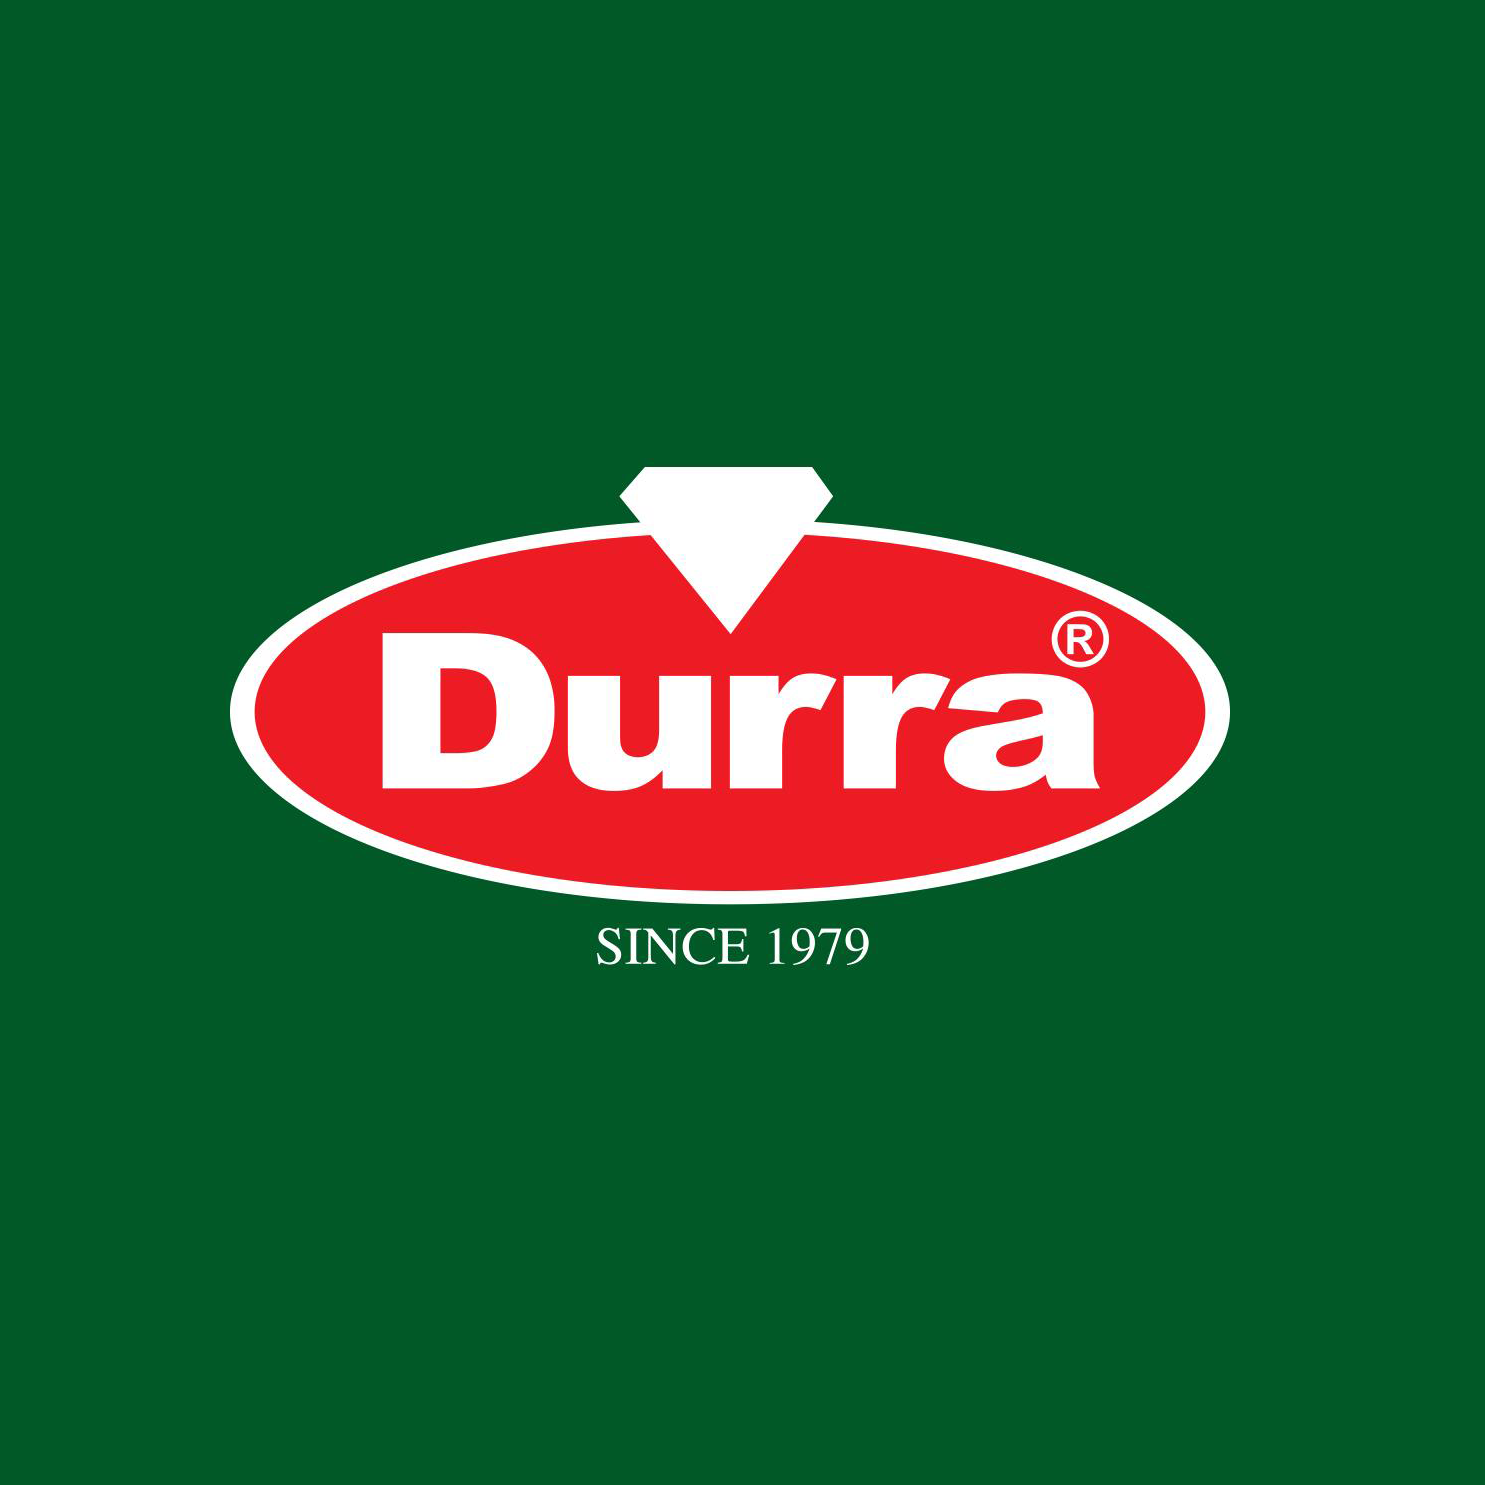 Al Durra